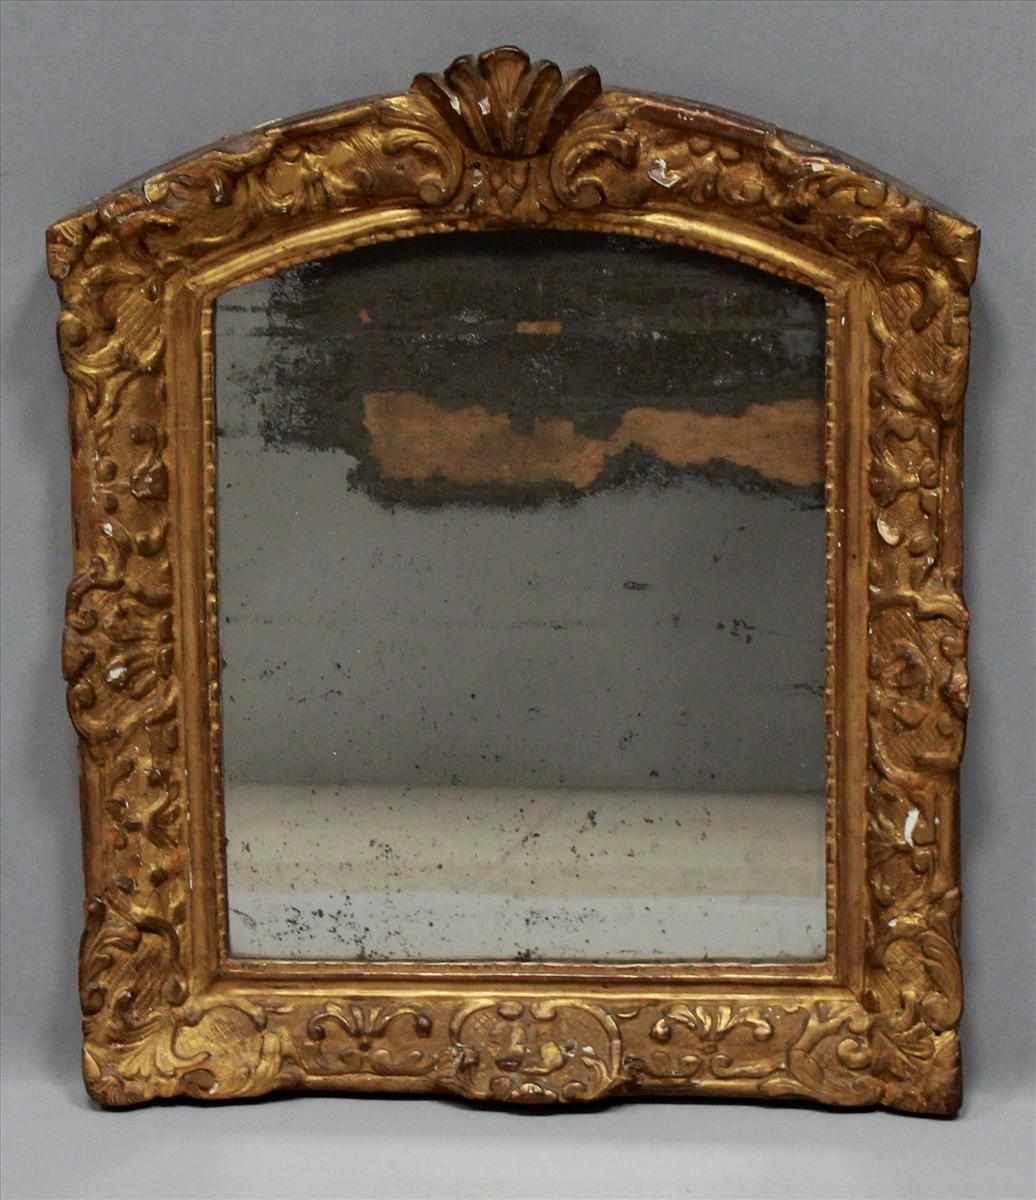 Barock-Spiegel (18. Jh.). Holz, geschnitzt und vergoldet. Altersspuren. Originales Glas. 55x 46 cm.